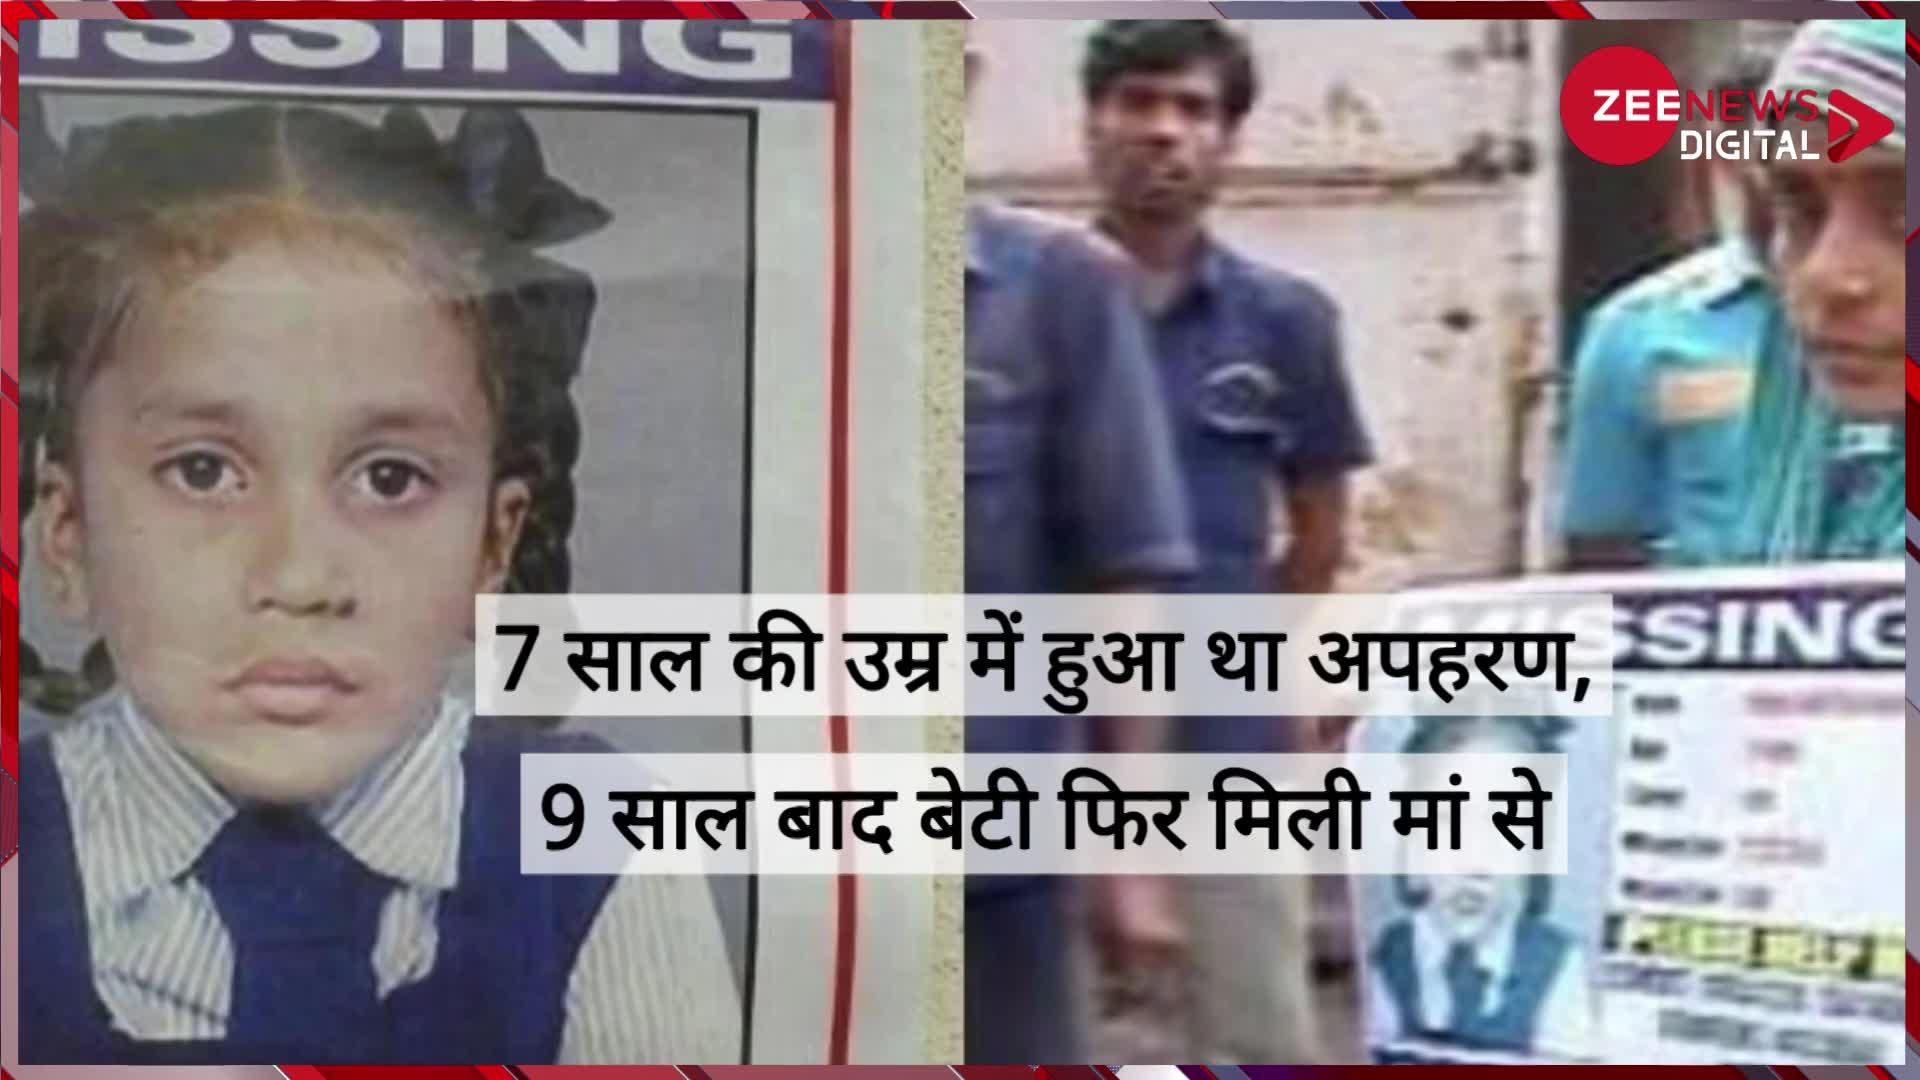 Mumbai Police: 7 साल की उम्र में लापता हुई बेटी को 9 साल बाद परिजनों से मिलाया मुंबई पुलिस ने